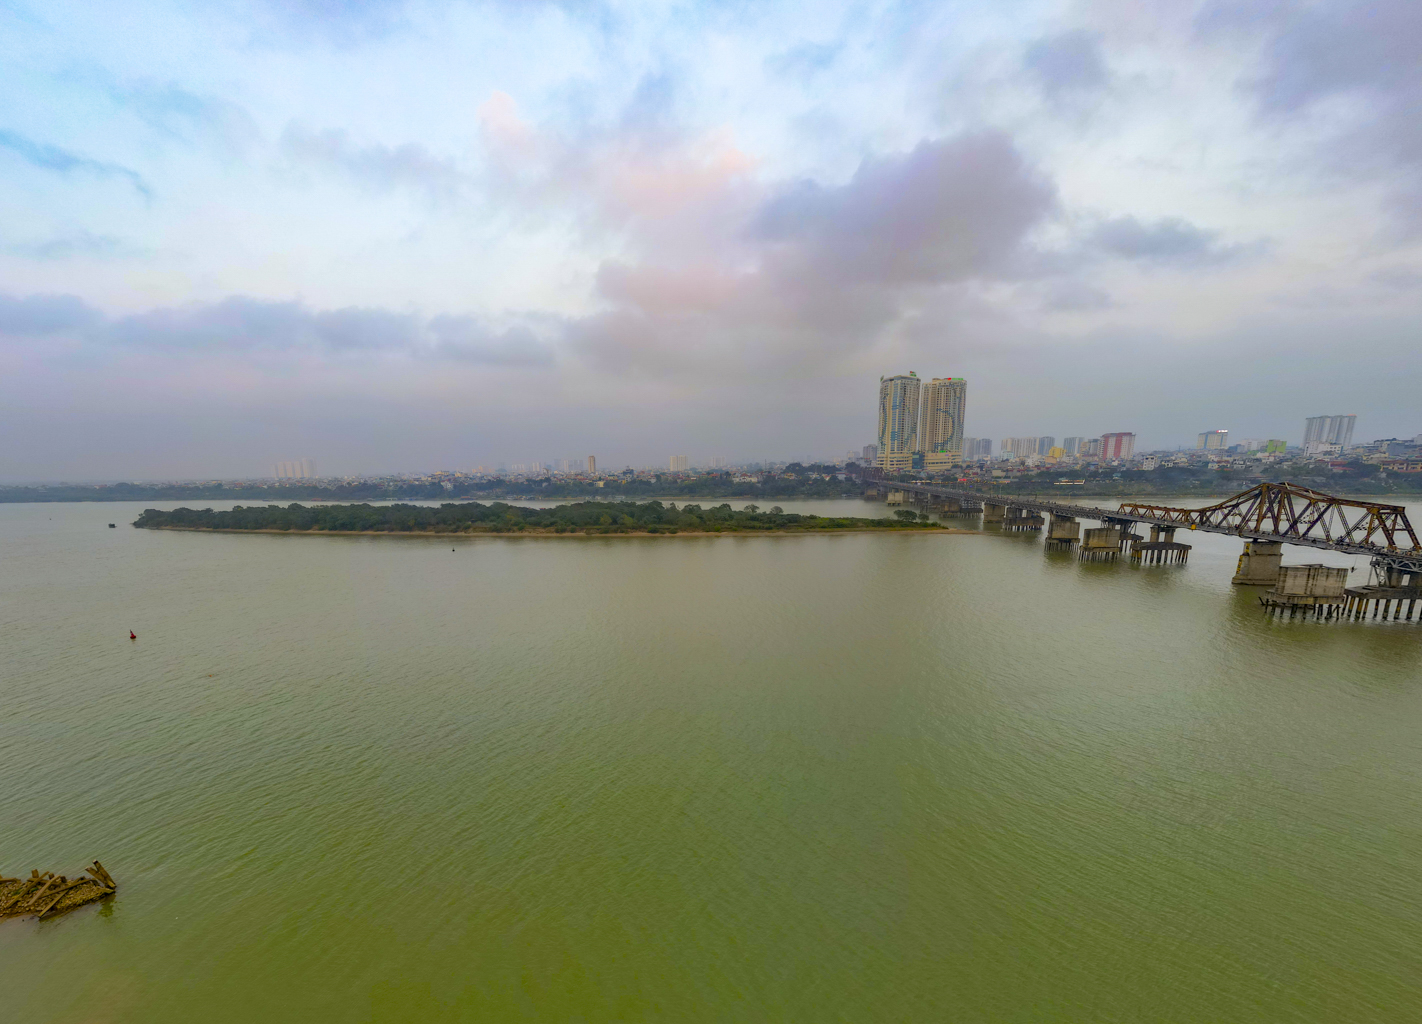 Quỹ đất lớn duy nhất còn sót lại ở Hà Nội, rộng bằng 8 quận nội thành, có nơi cách hồ Gươm chỉ vài phút đi xe - Ảnh 9.